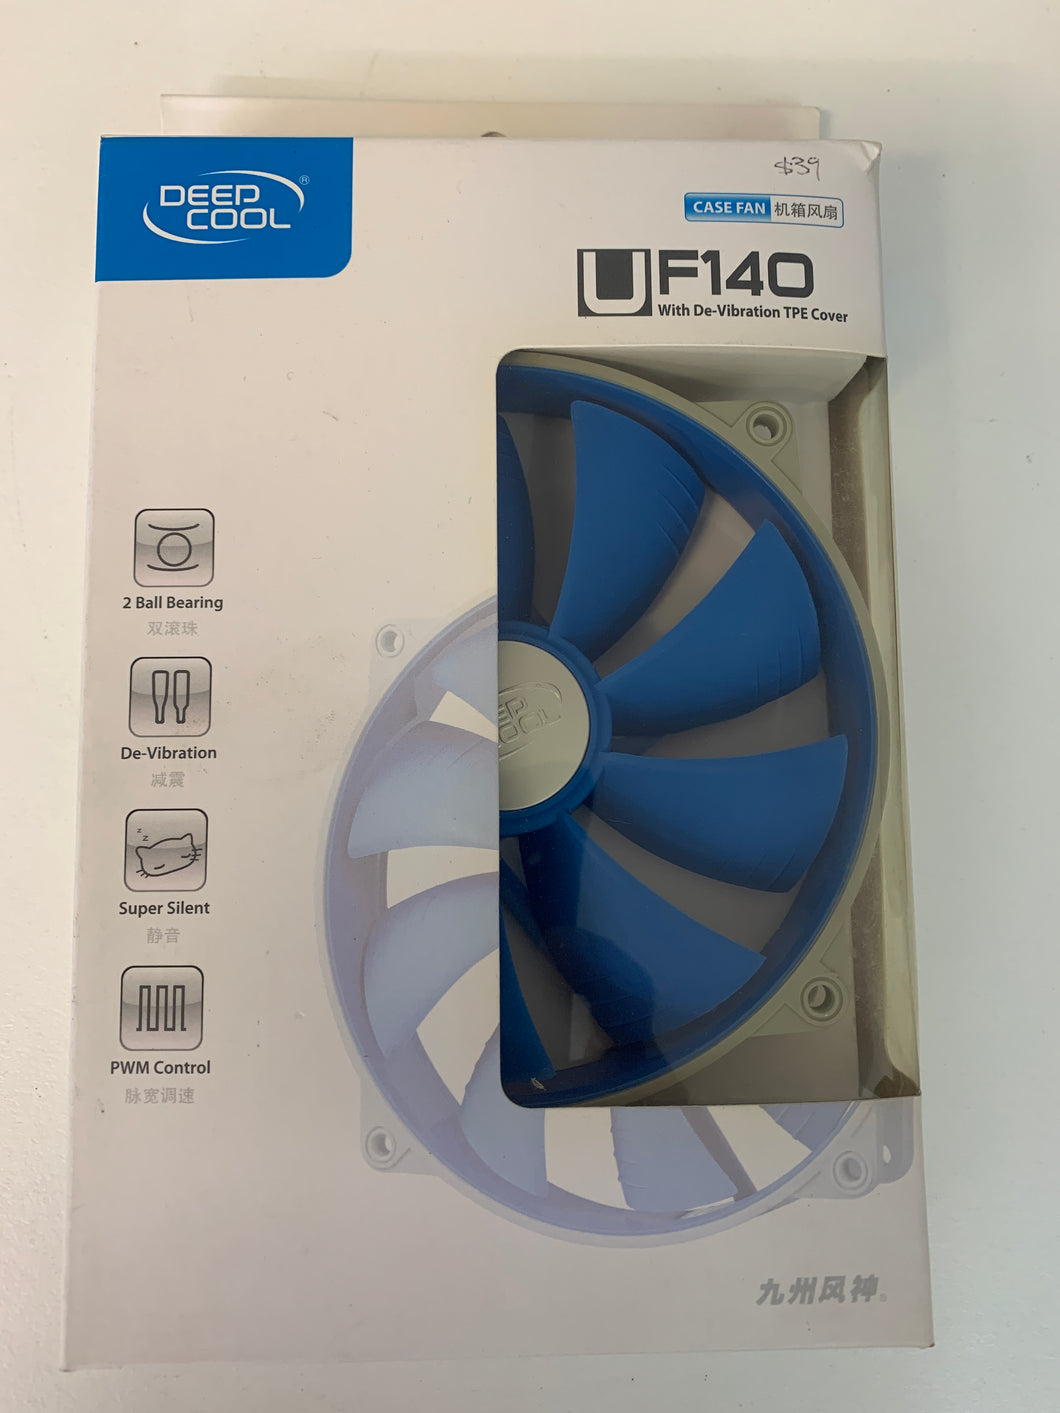 Deep Cool UF140 fan